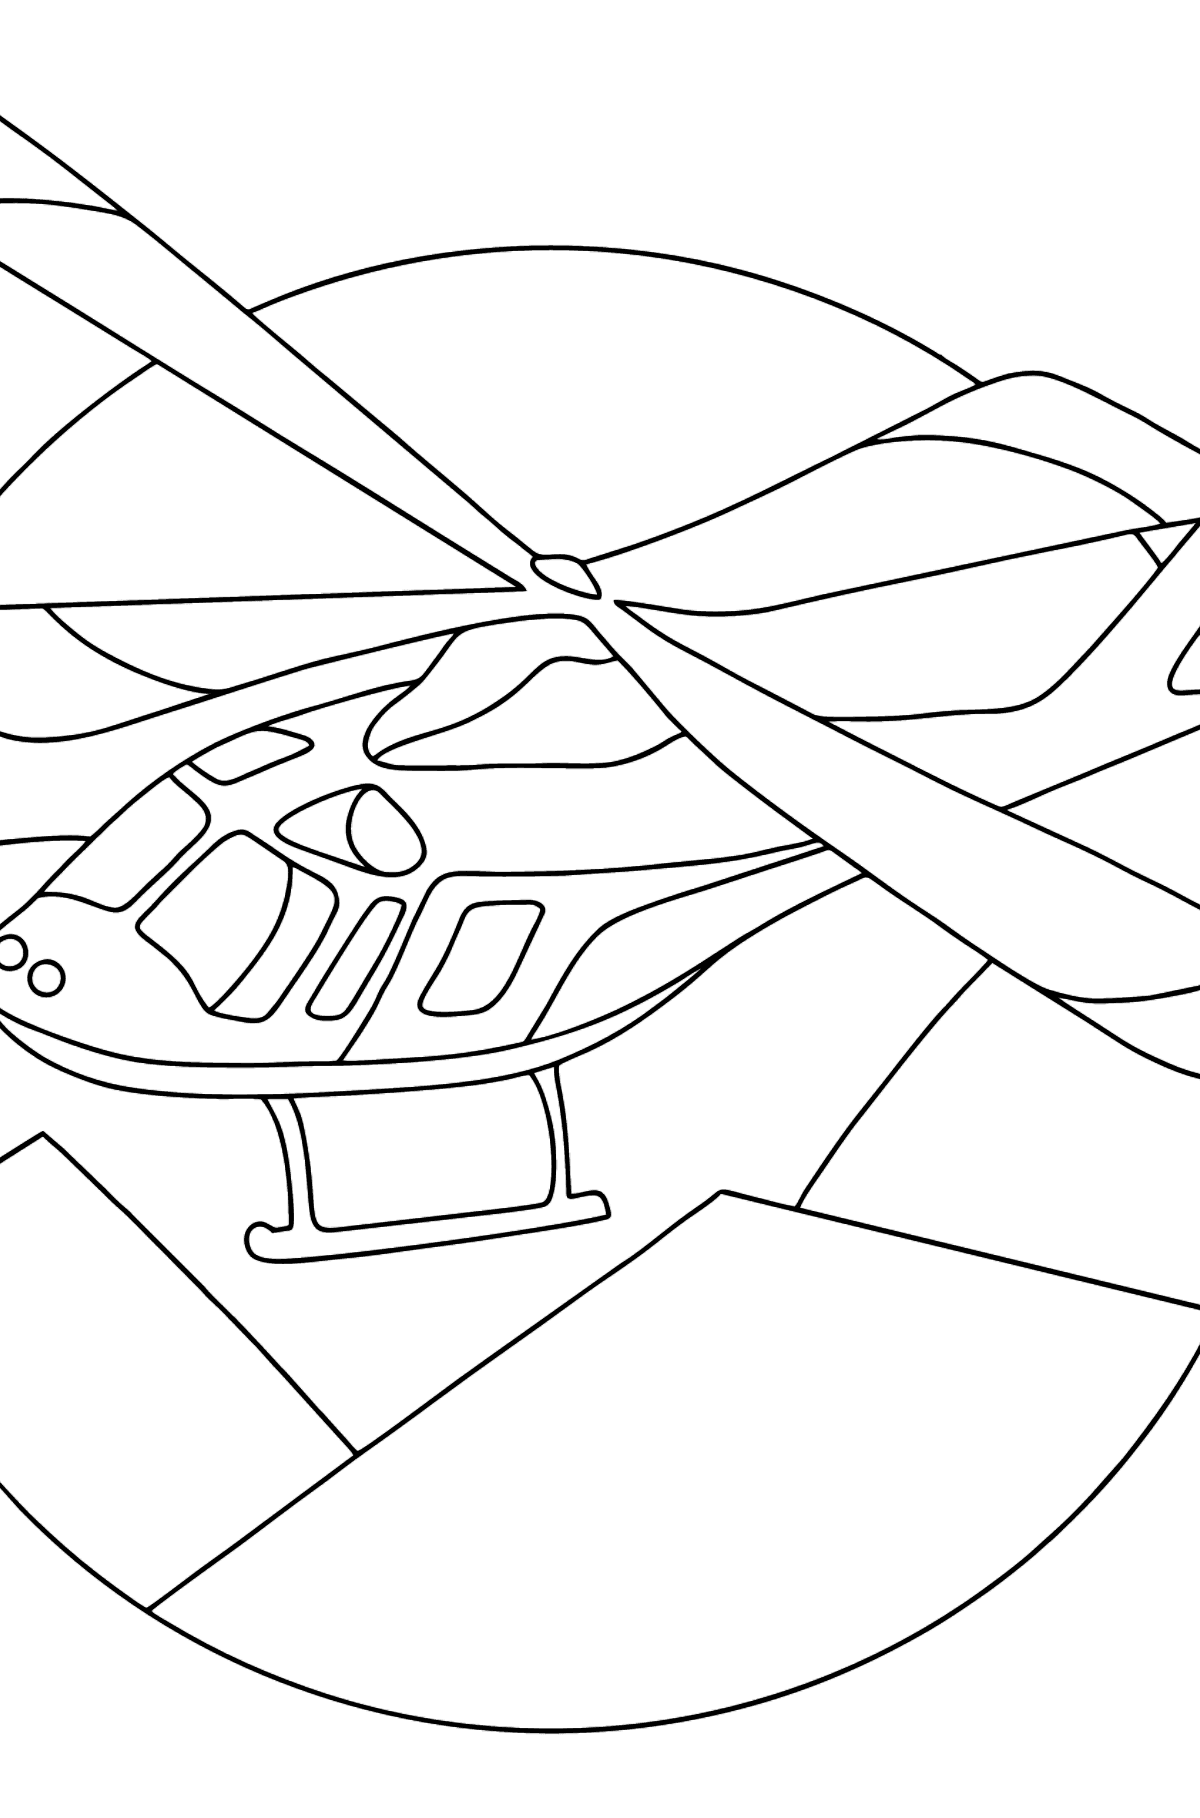 Tegning til farvning sportshelikopter - Tegninger til farvelægning for børn